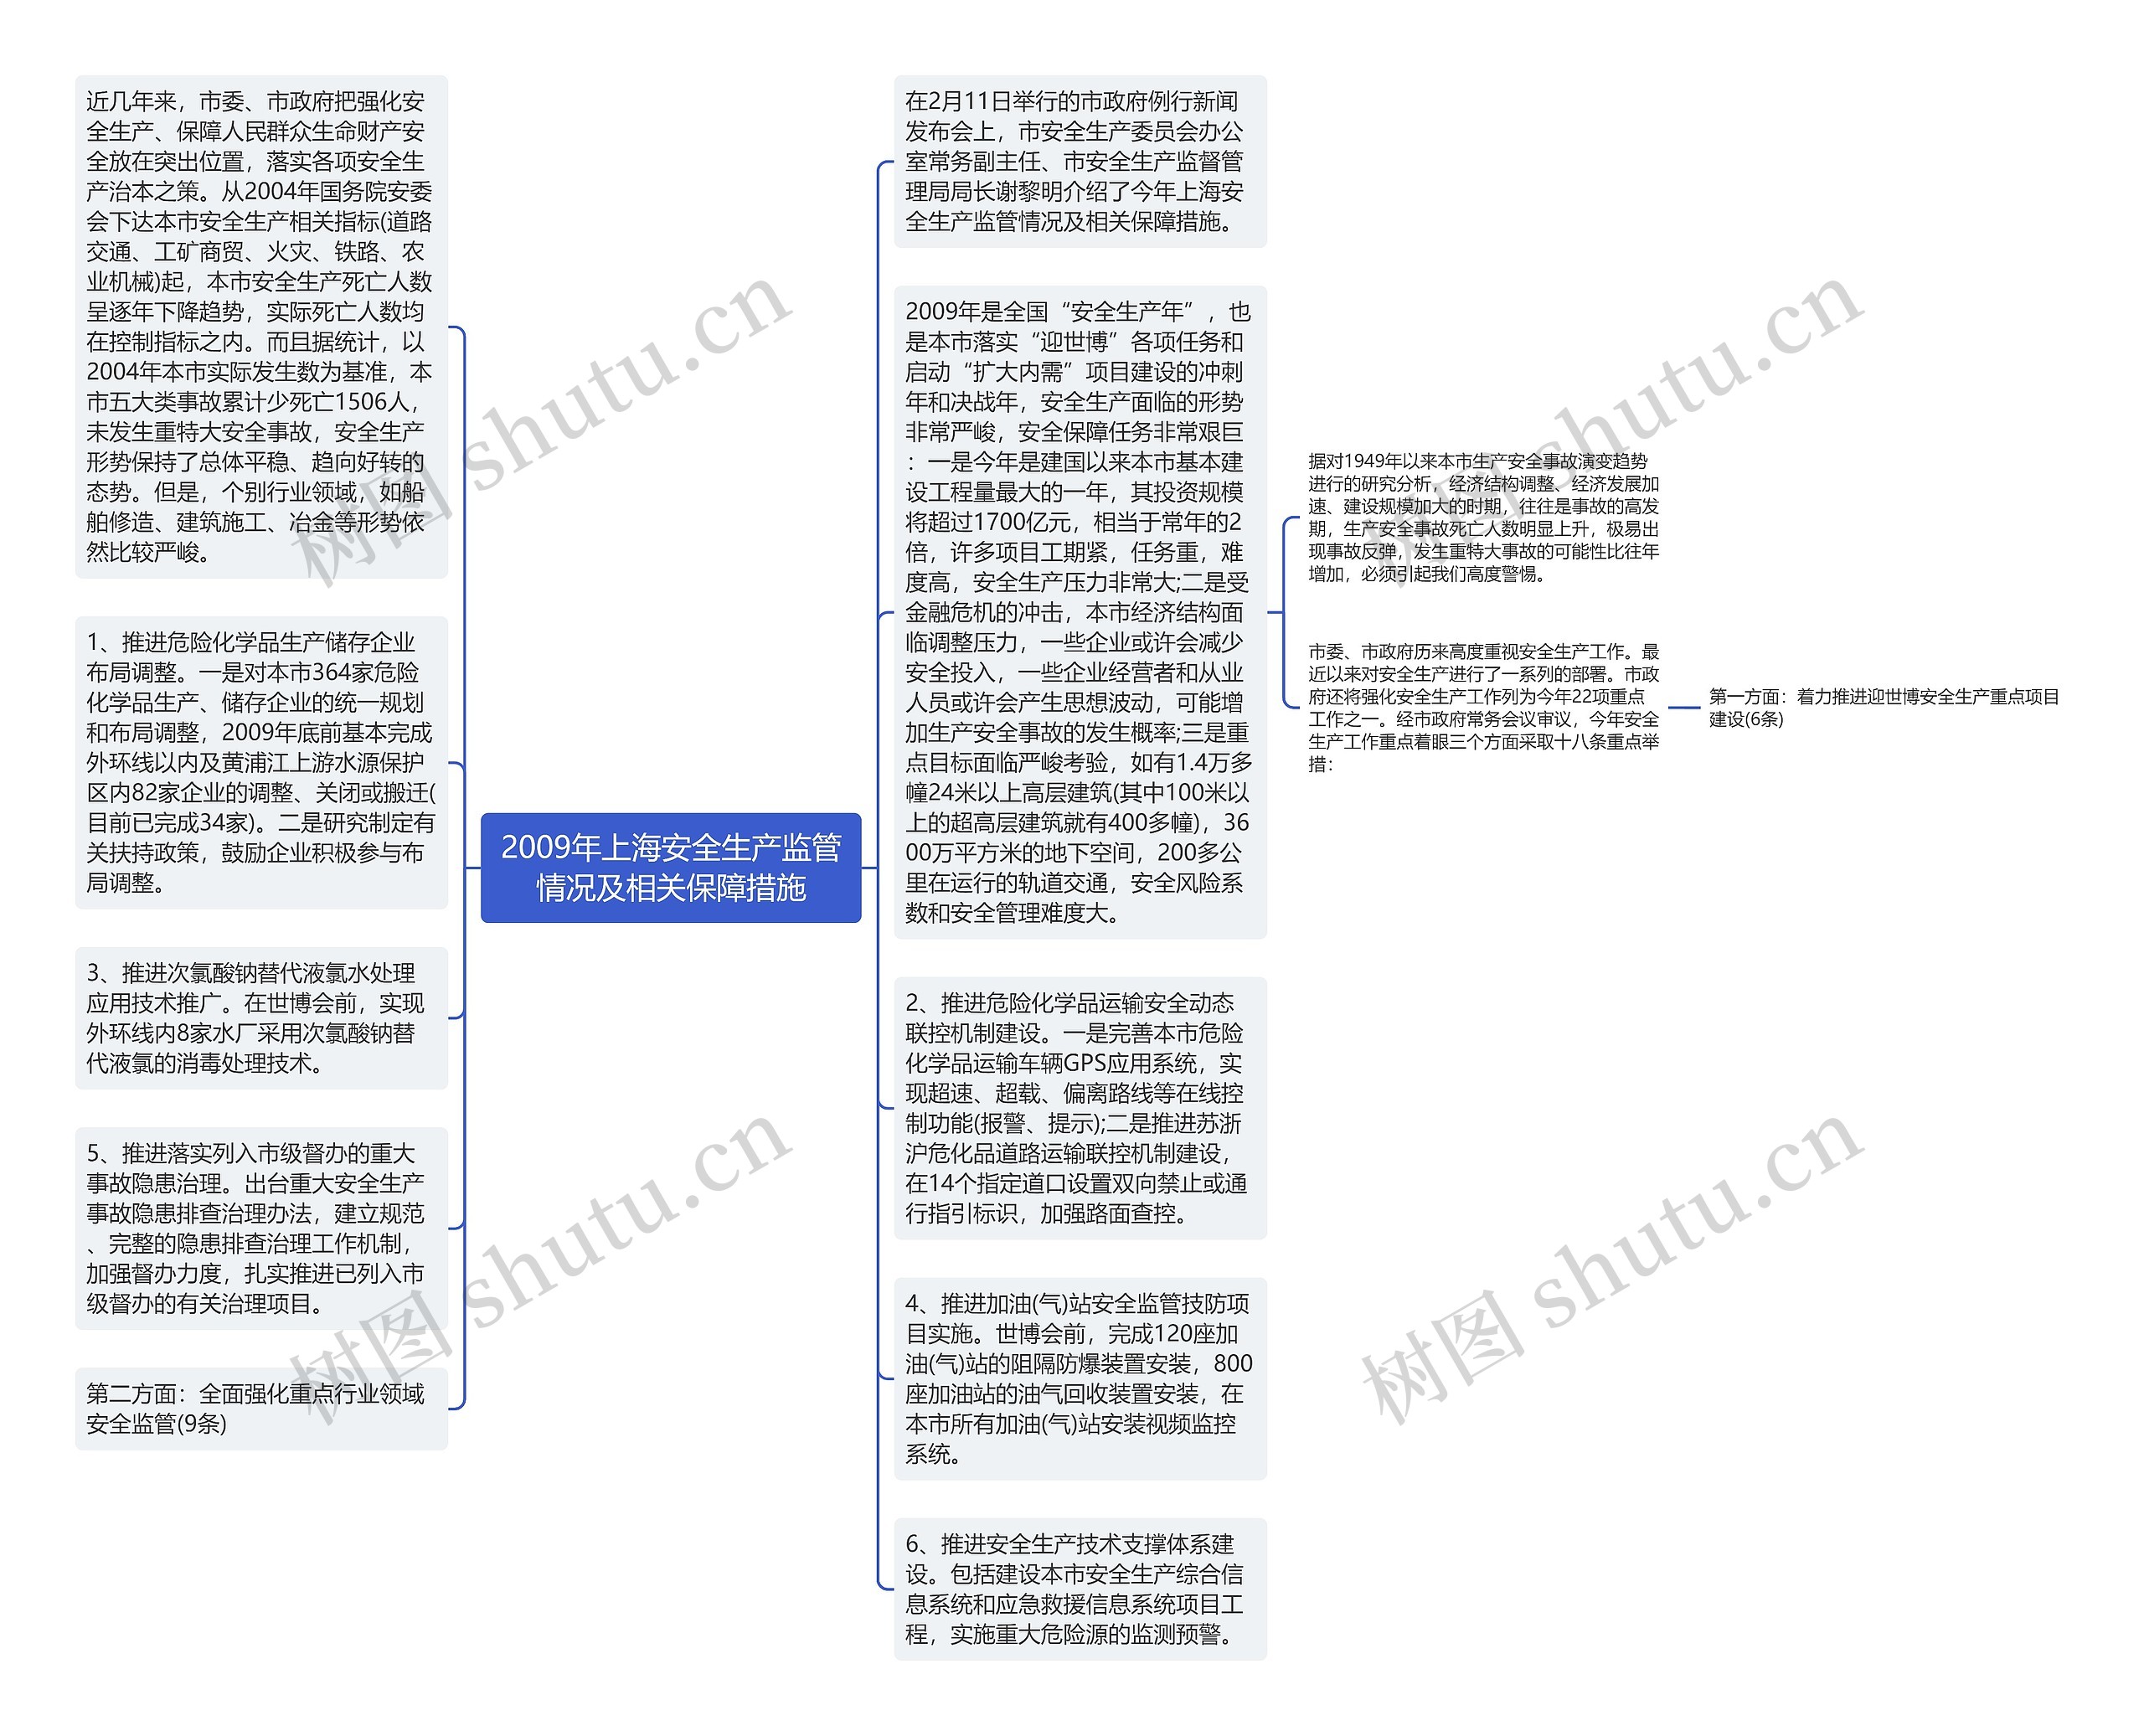 2009年上海安全生产监管情况及相关保障措施思维导图